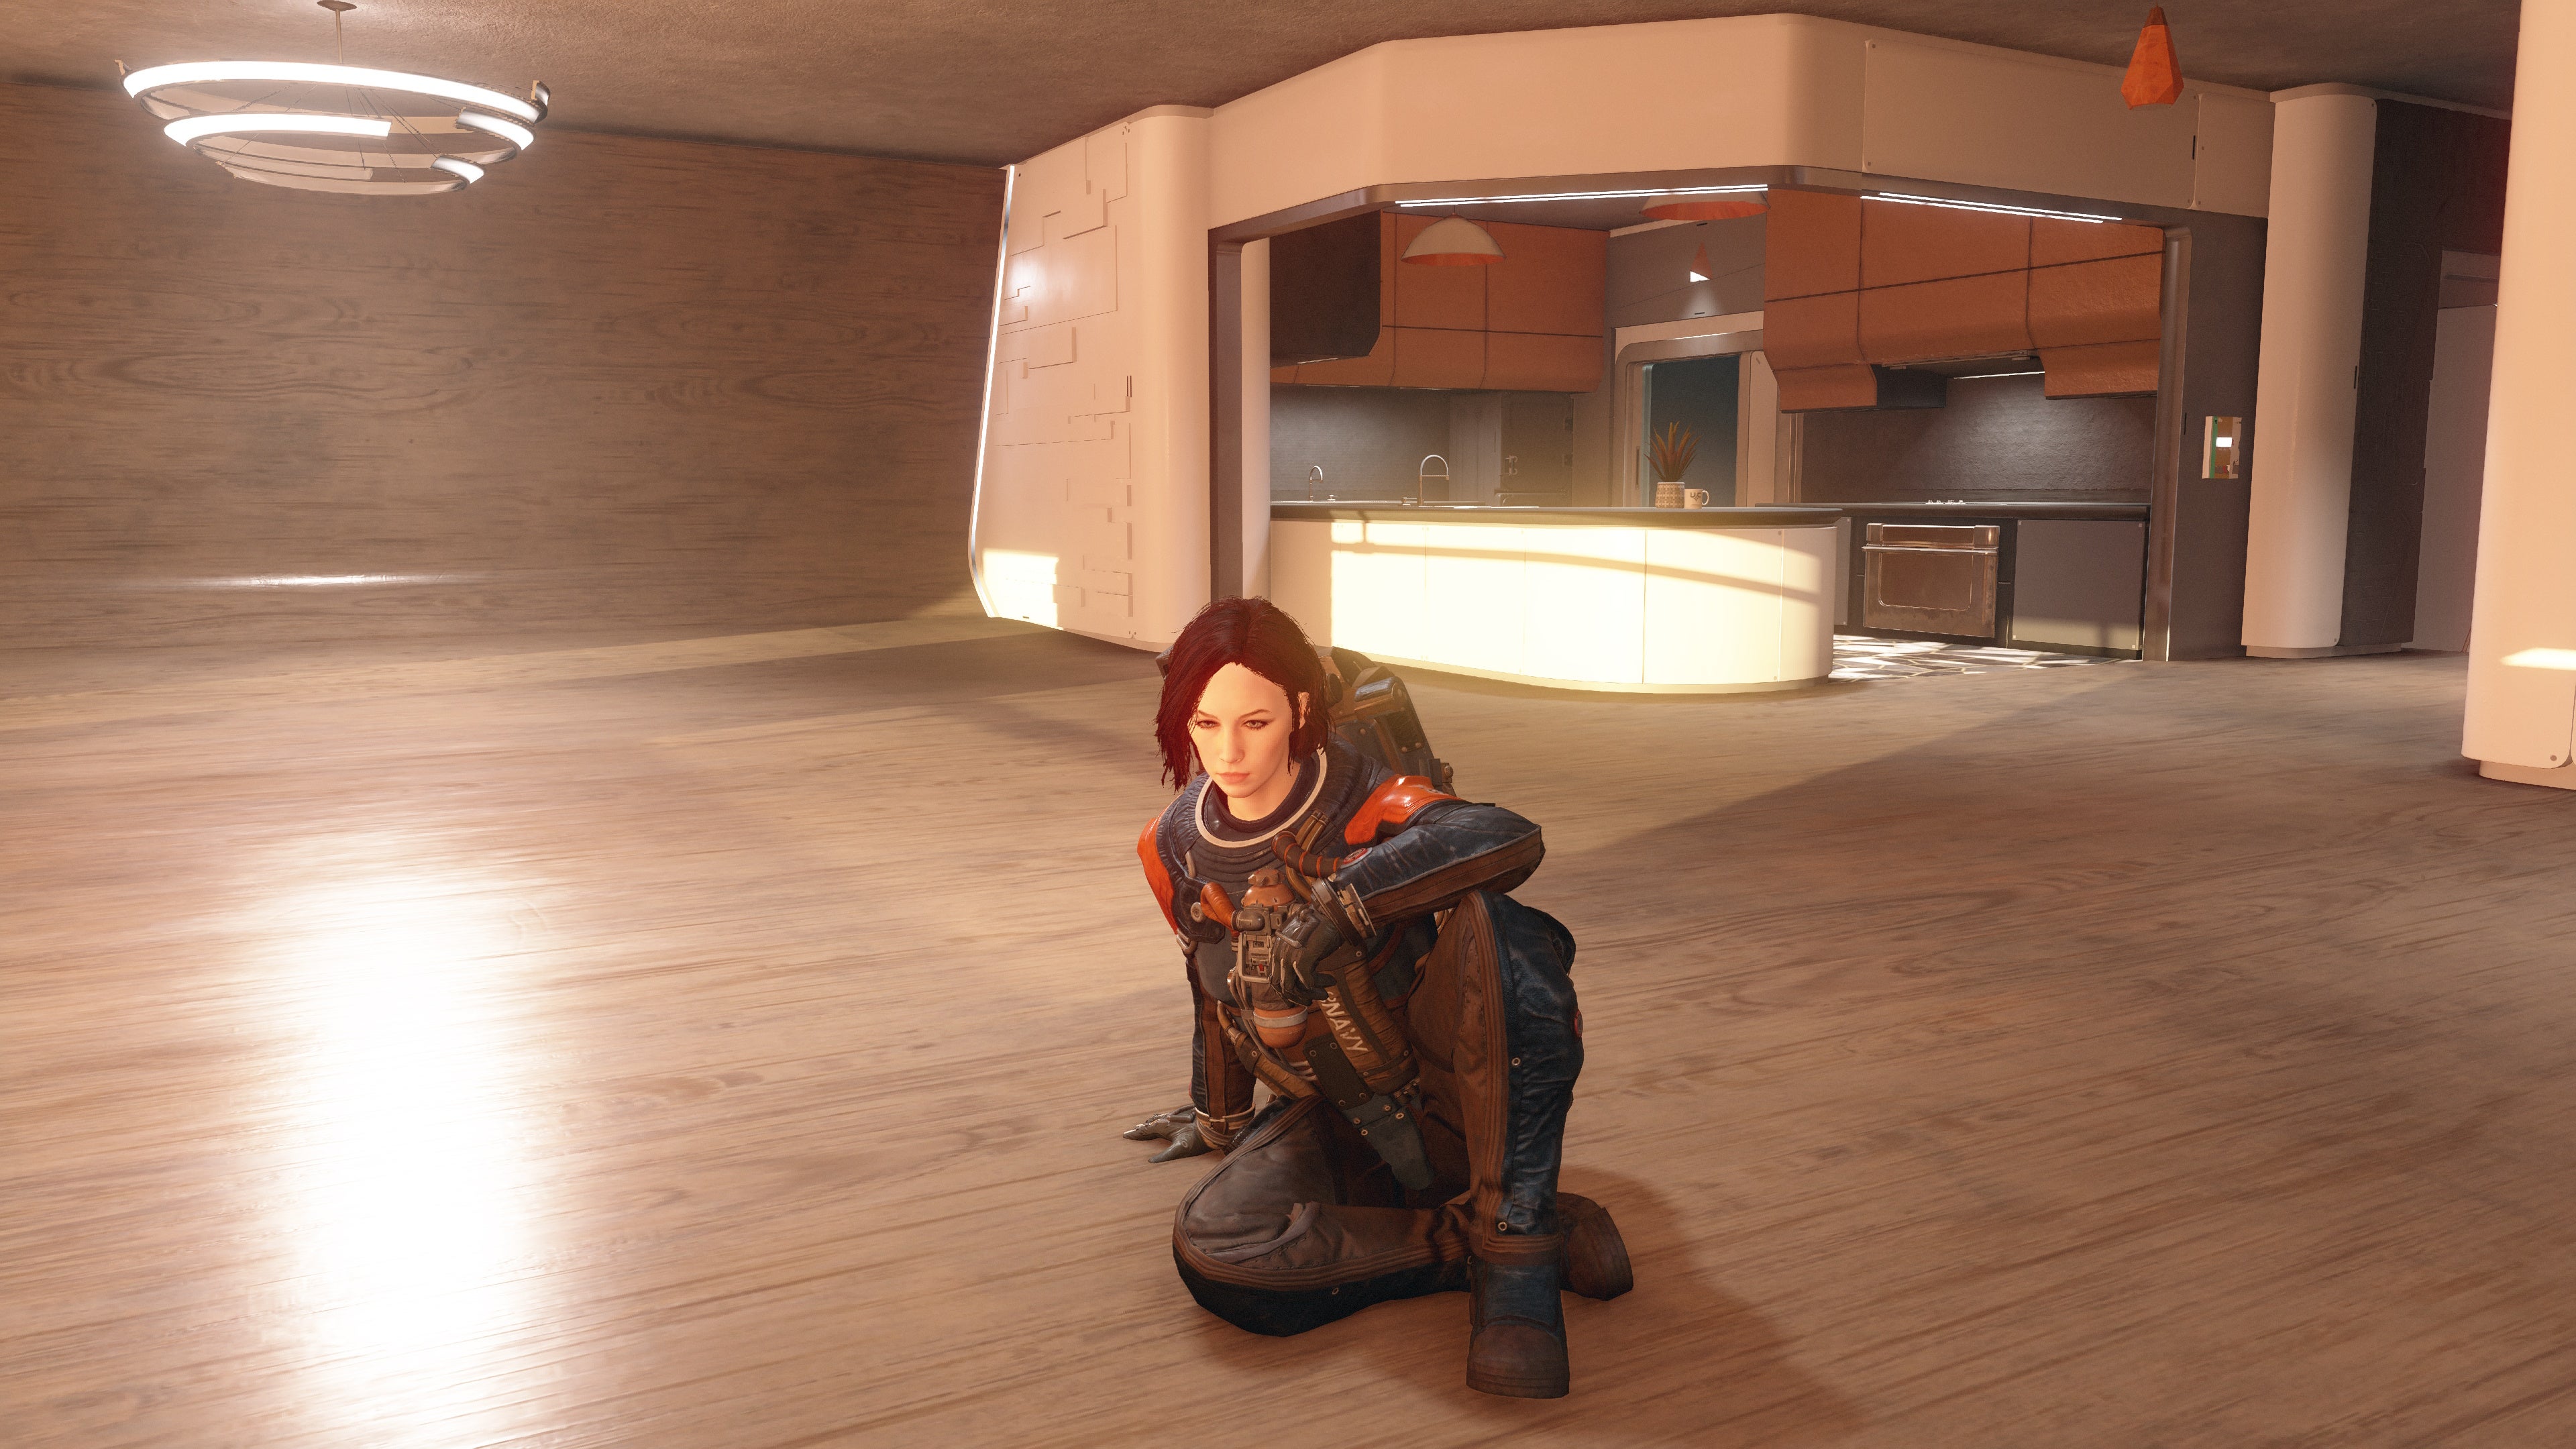 Vista en modo fotográfico de un personaje con armadura de vanguardia y sin casco sentado en el suelo de un ático vacío.